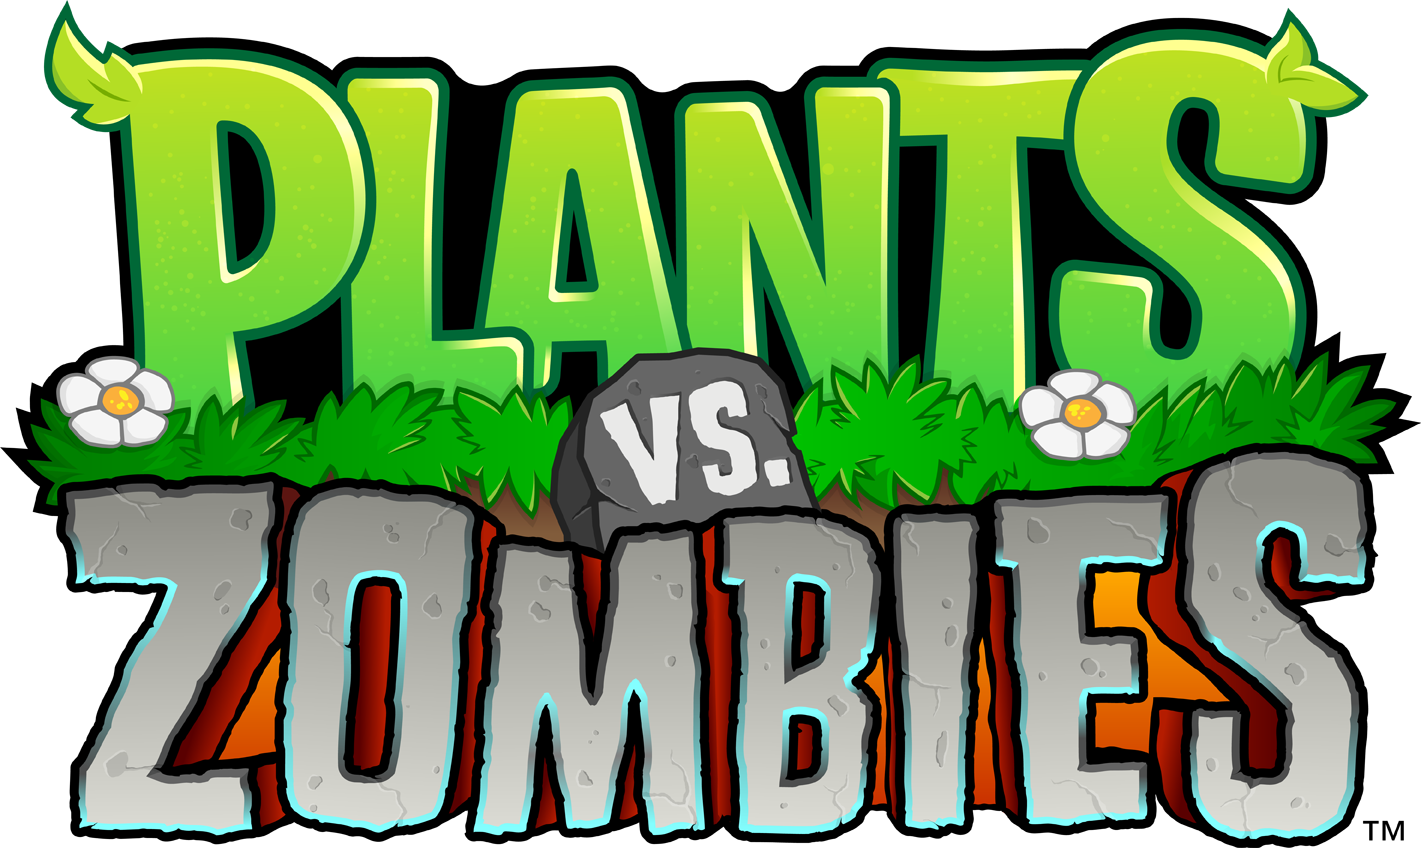 Resultado de imagen para plants vs zombies png